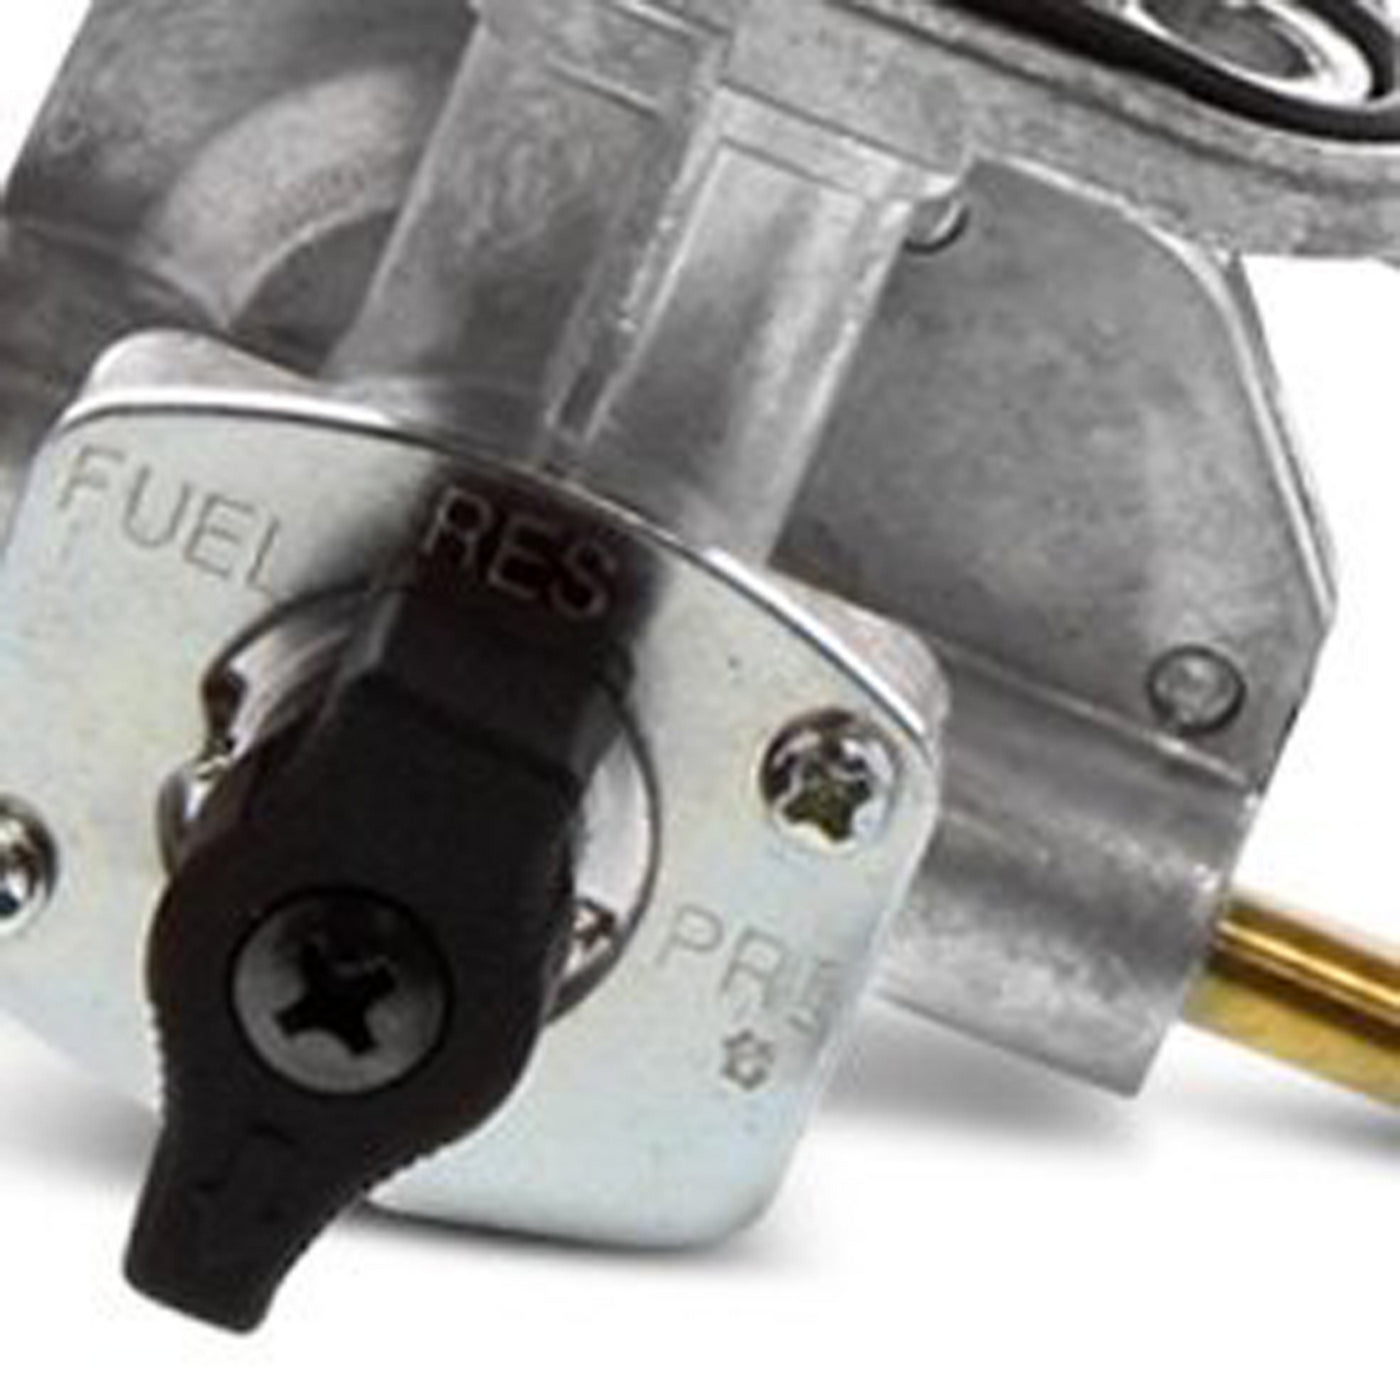 Fuel Star FS101-0169 Fuel Valve Kit #FS101-0169